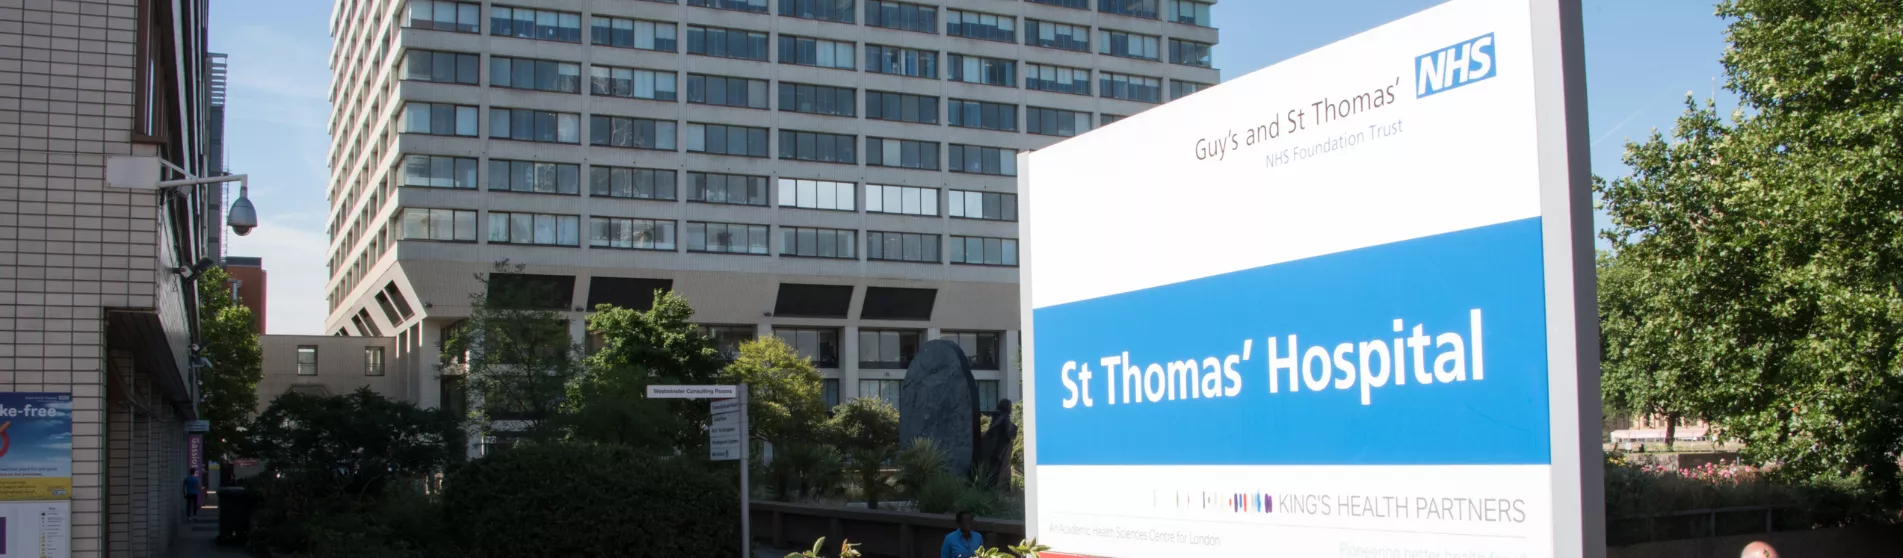 St Thomas hospital exterior_1903x558